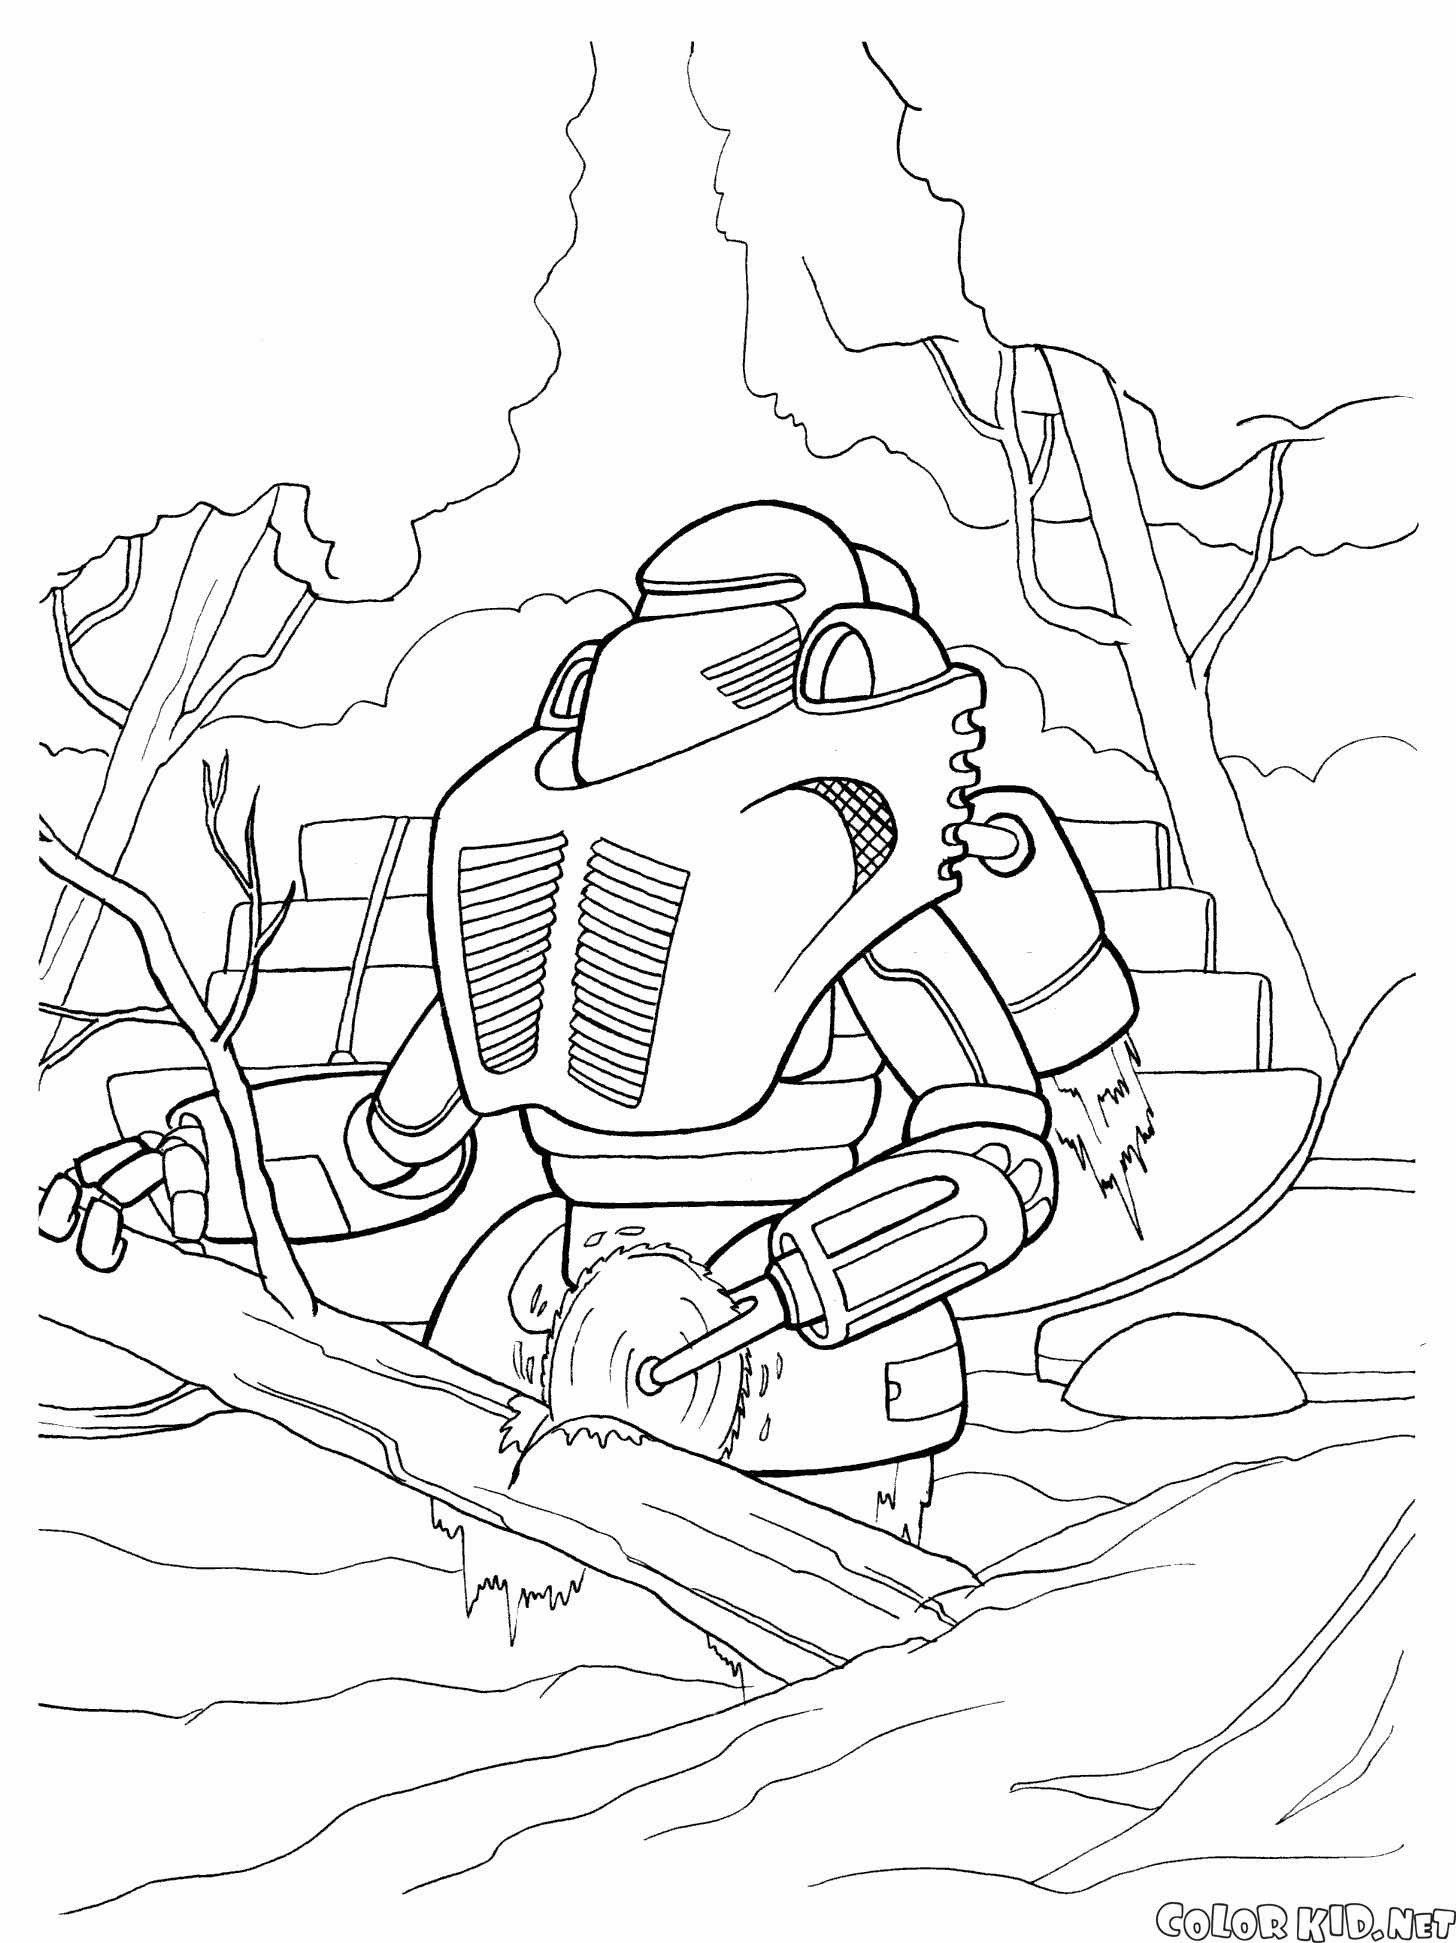 Robot segare un bosco